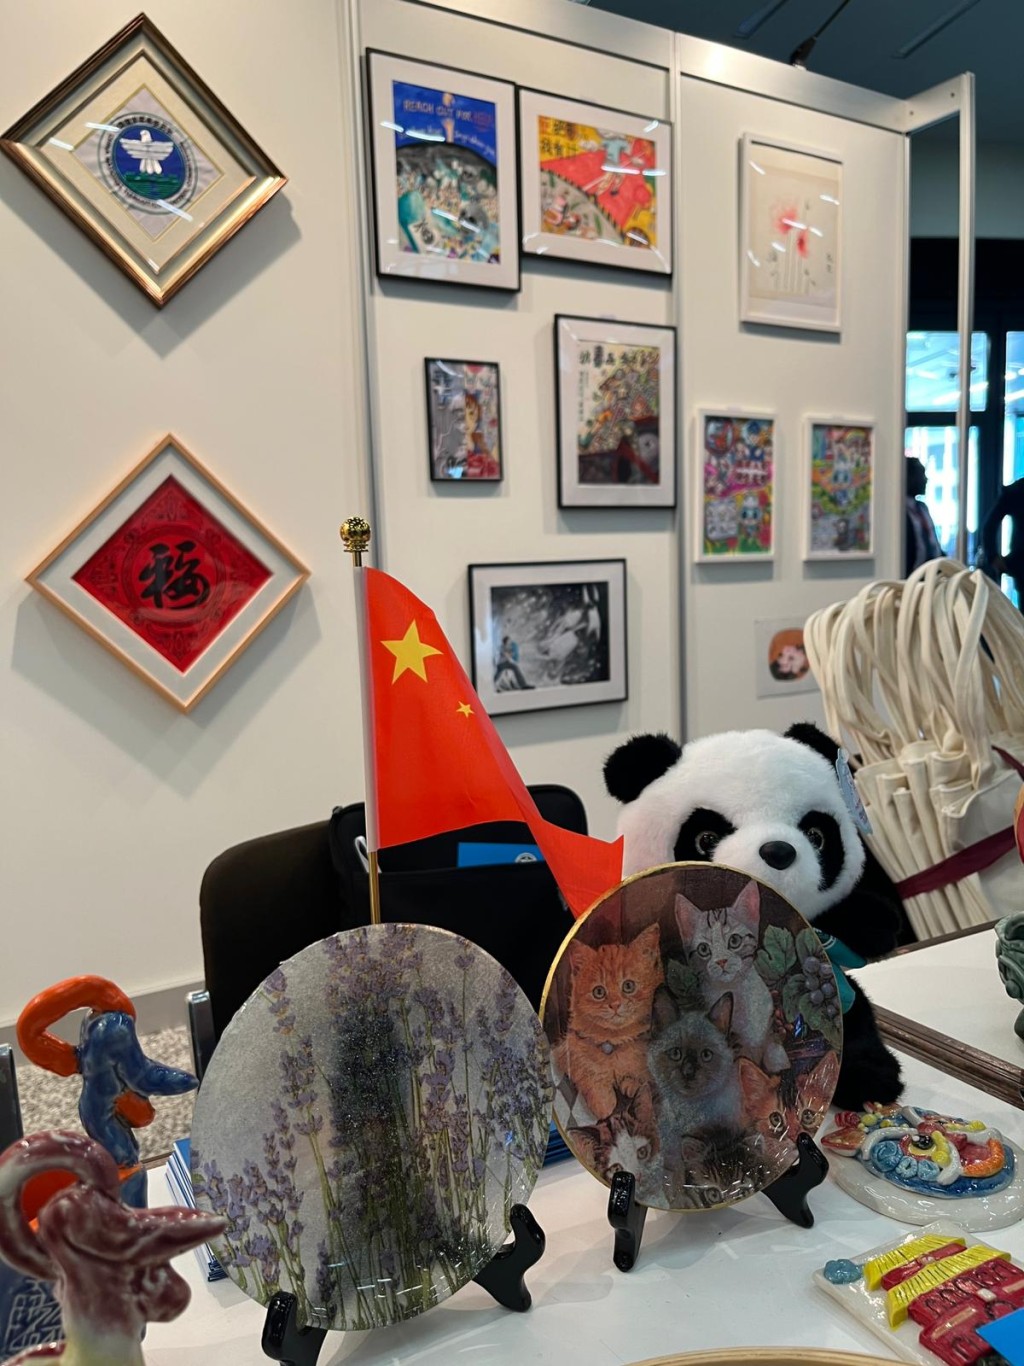 展览展示了不少来自香港的禁毒艺术作品。